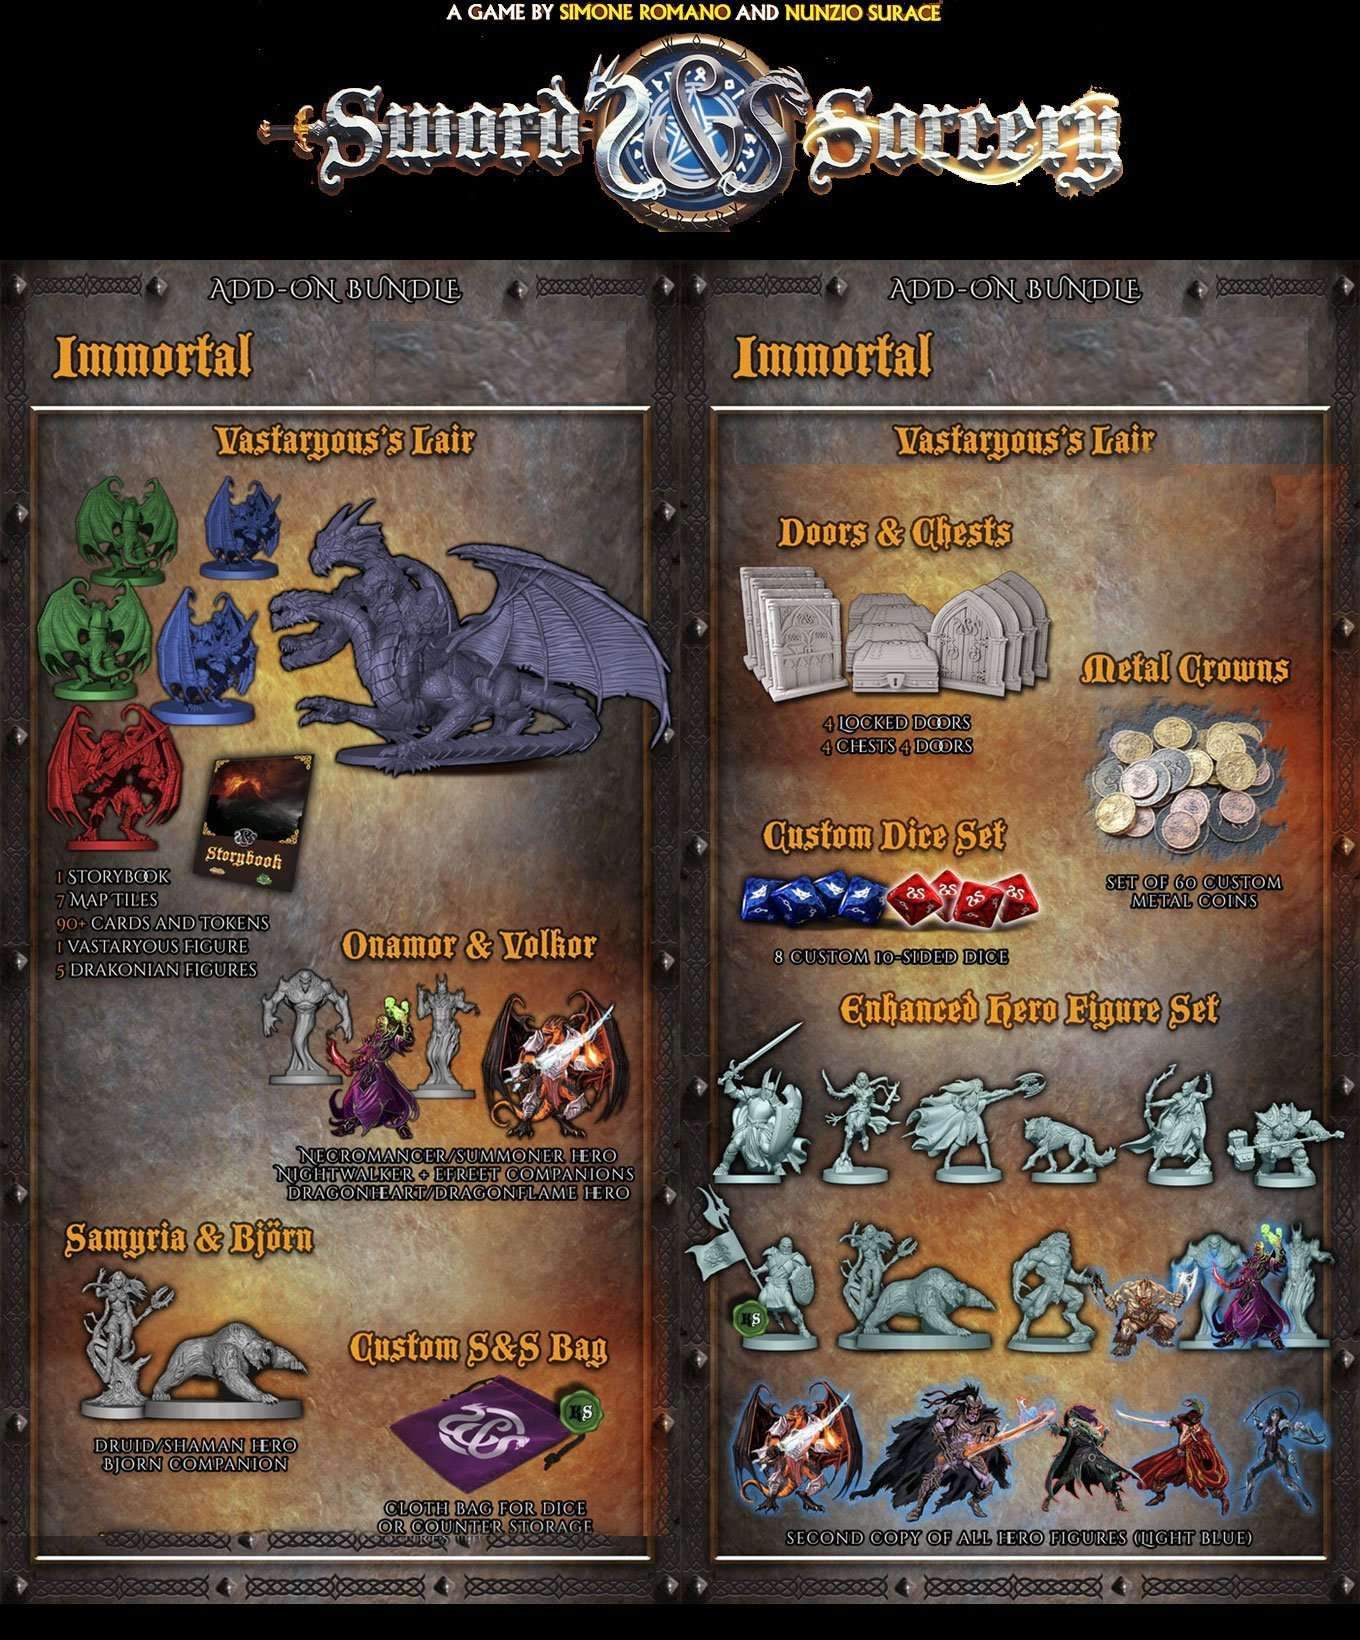 Sværd & trolddom - Immortal Bundle (Kickstarter Special) Kickstarter Board Game Supplement Ares Games